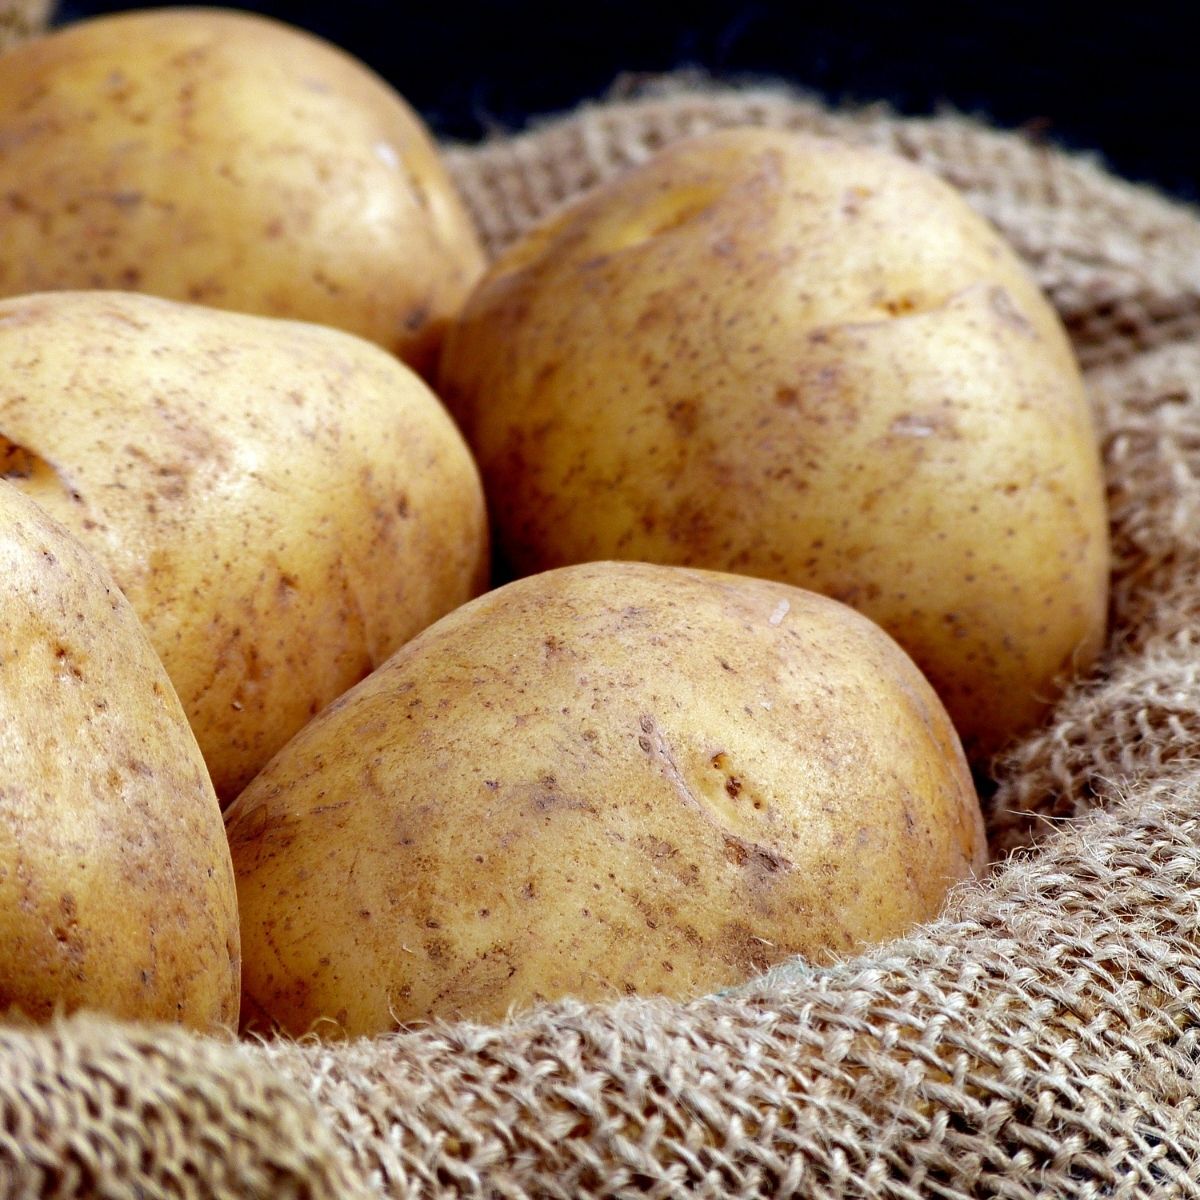 Гибрид картофель